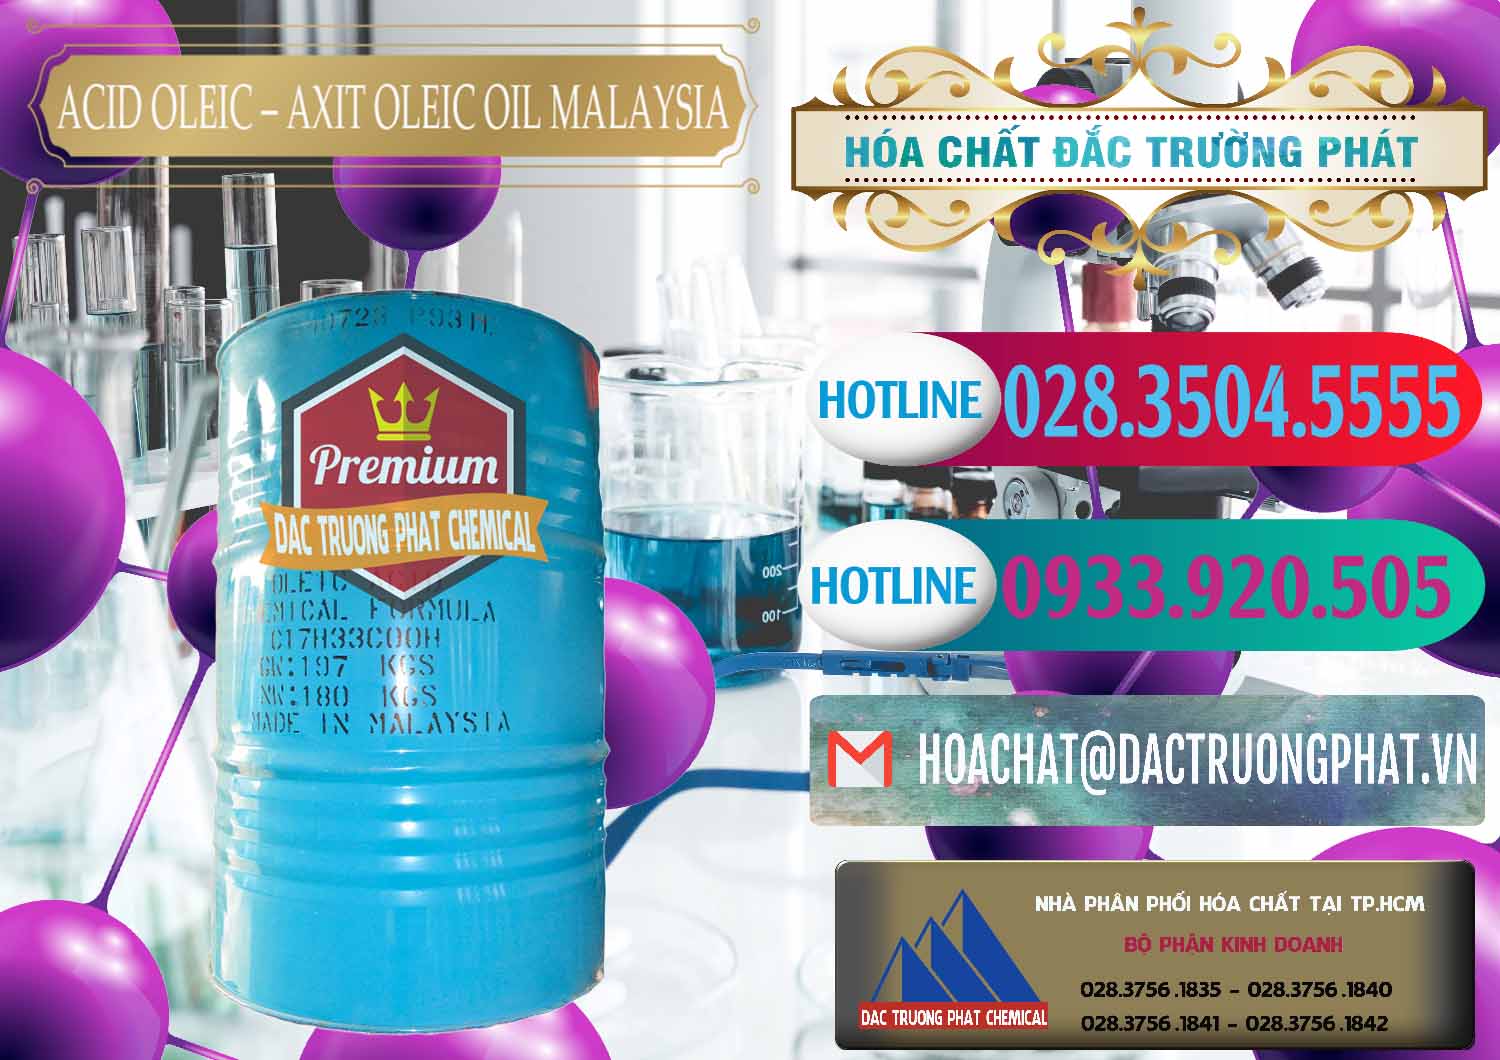 Phân phối & bán Acid Oleic – Axit Oleic Oil Malaysia - 0013 - Cty kinh doanh - phân phối hóa chất tại TP.HCM - truongphat.vn